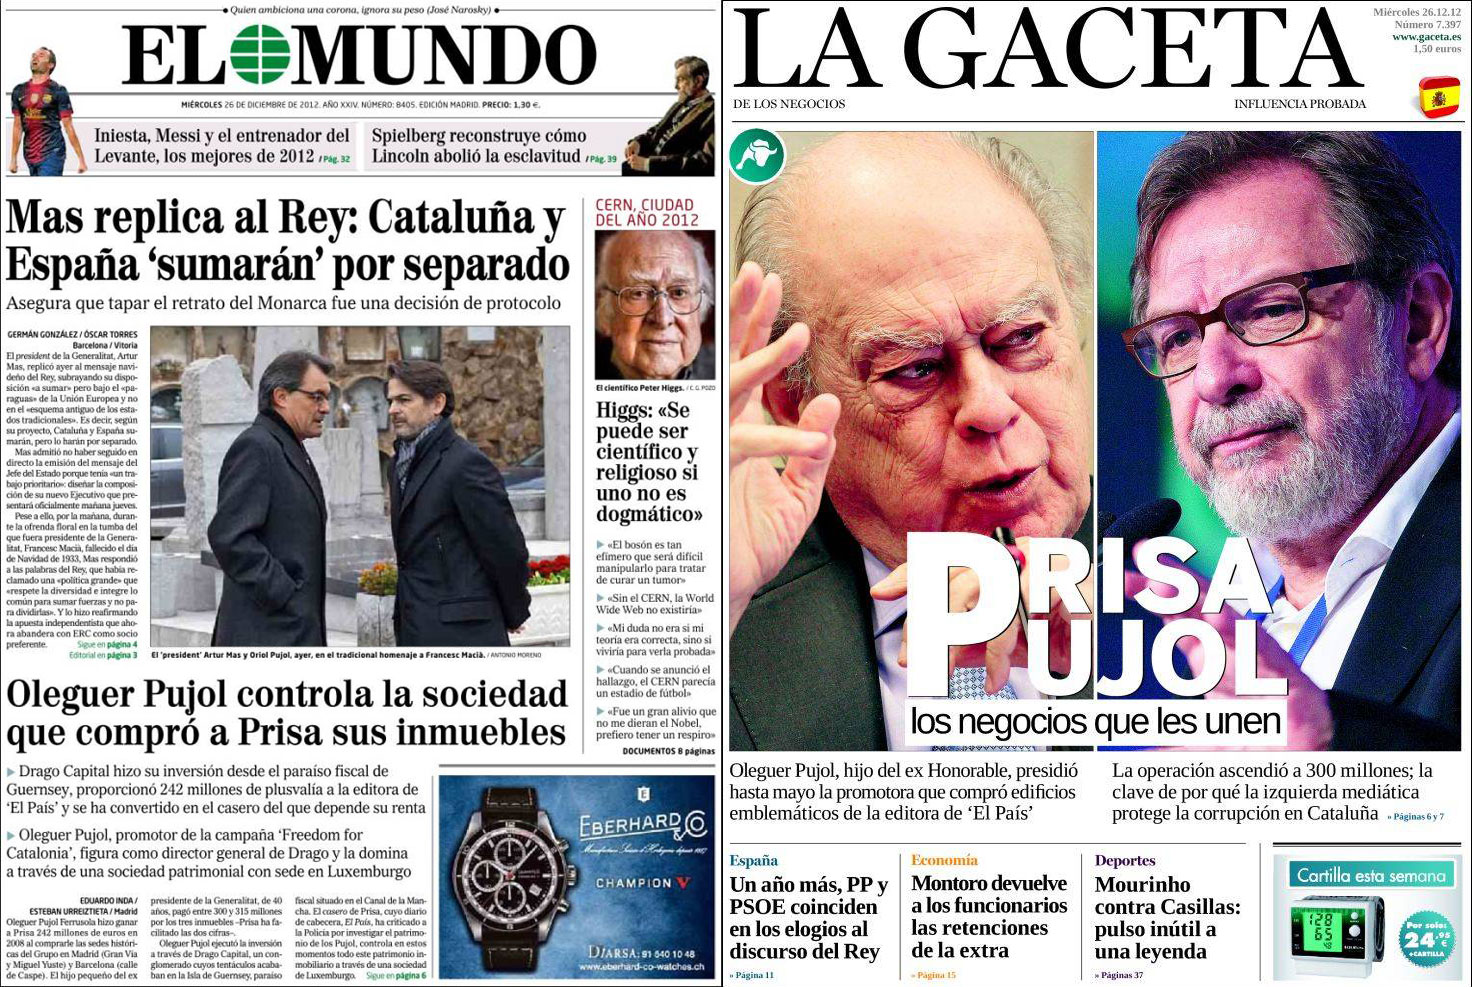 'El Mundo' y 'La Gaceta' denuncian 'favores económicos' tras las informaciones de 'El País' sobre el 'caso Pujol'